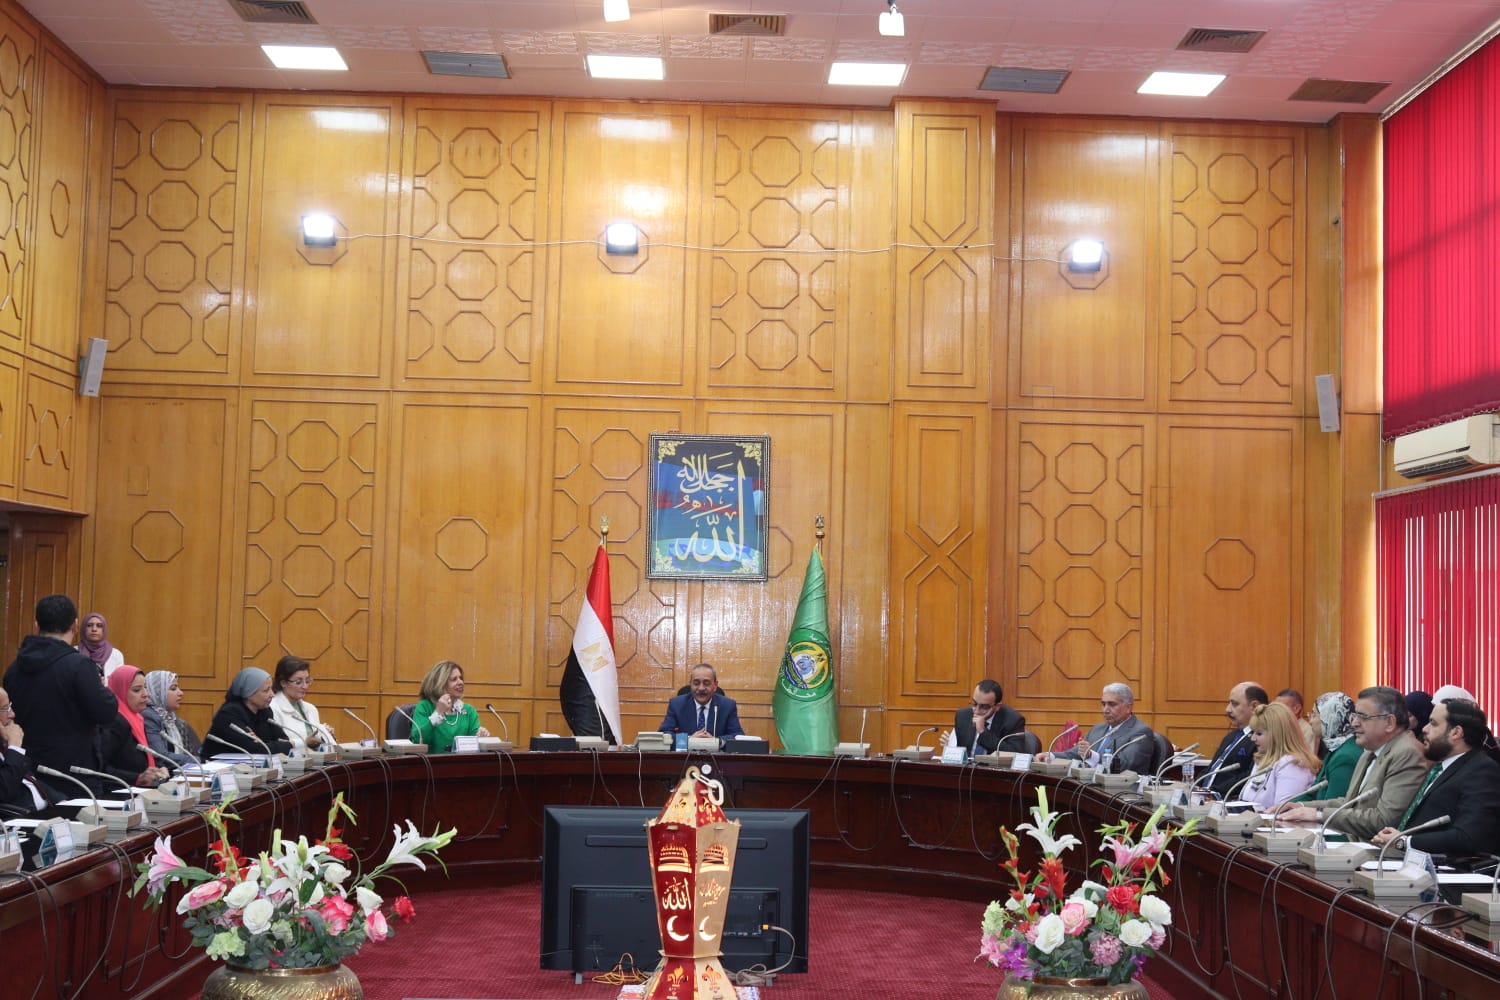  La délégation du Conseil National des Droits de l'Homme tient une série de réunions dans le gouvernorat d'Ismaïlia 